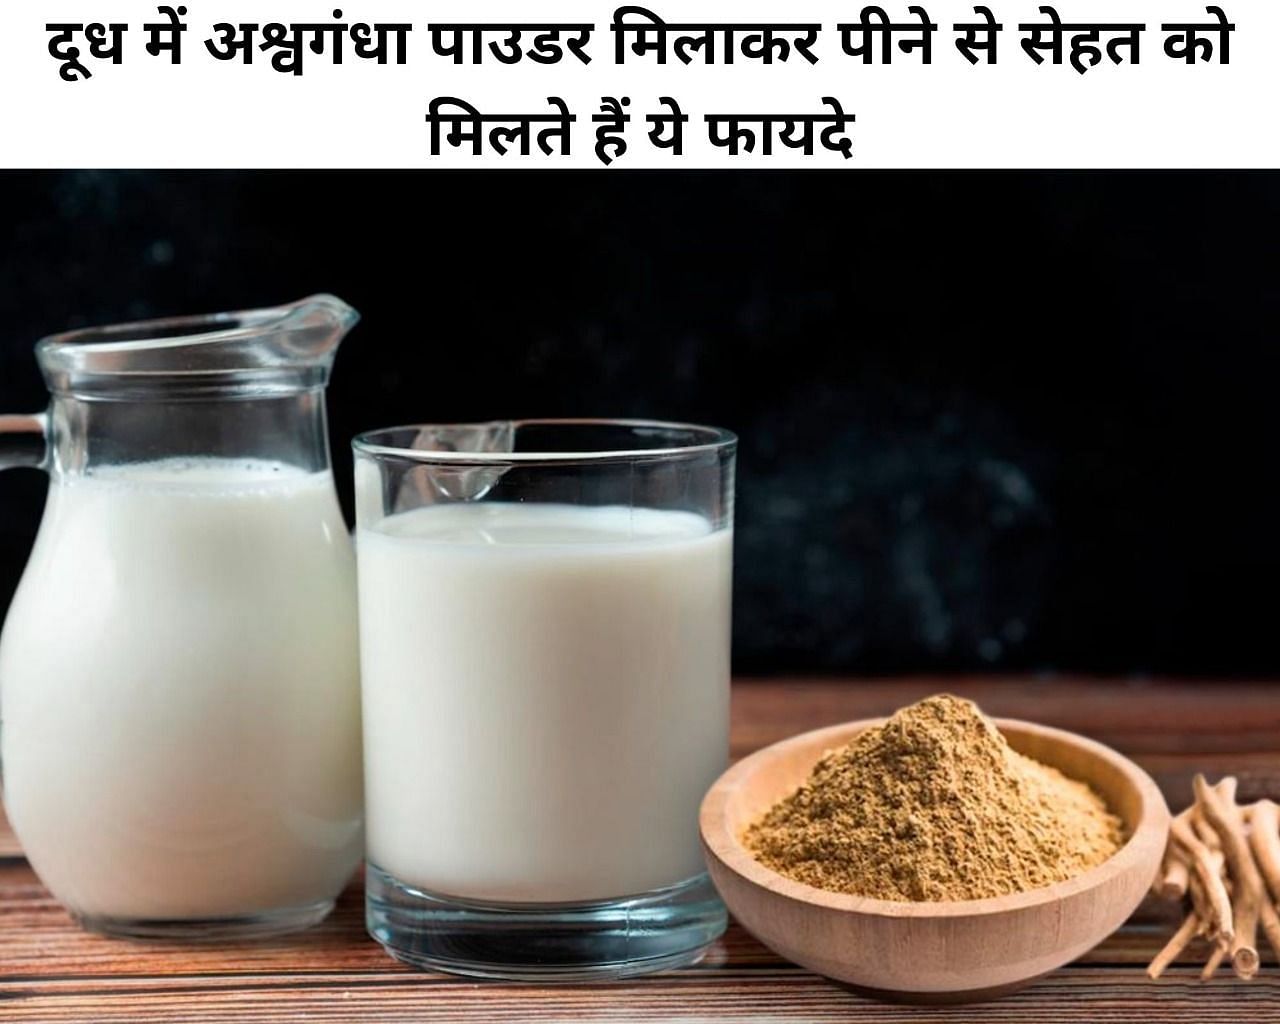 दूध में अश्वगंधा पाउडर मिलाकर पीने से सेहत को मिलते हैं ये फायदे (फोटो - sportskeeda hindi)